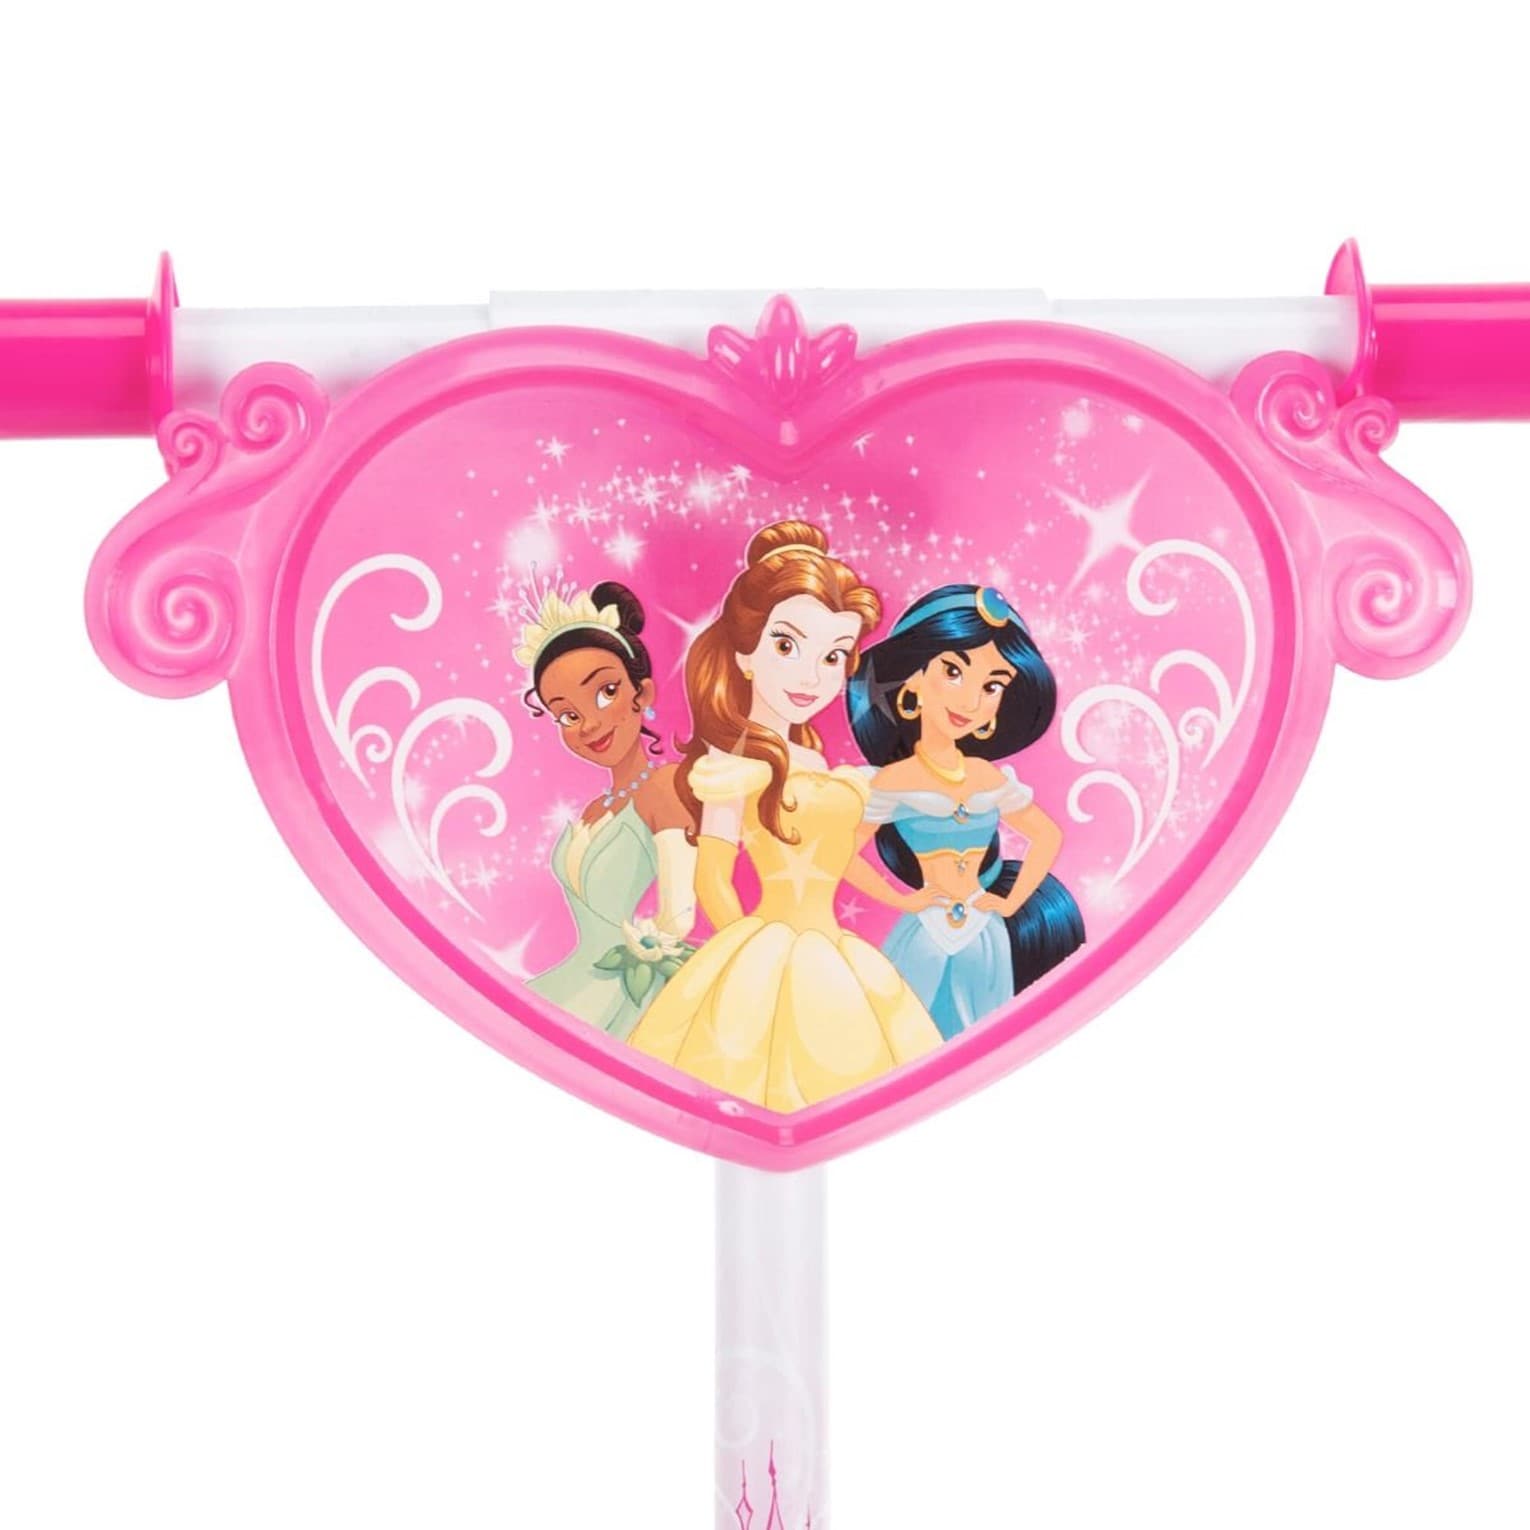 Huffy Trottinette électrique enfant 3 roues Disney Princess Bubble, rose